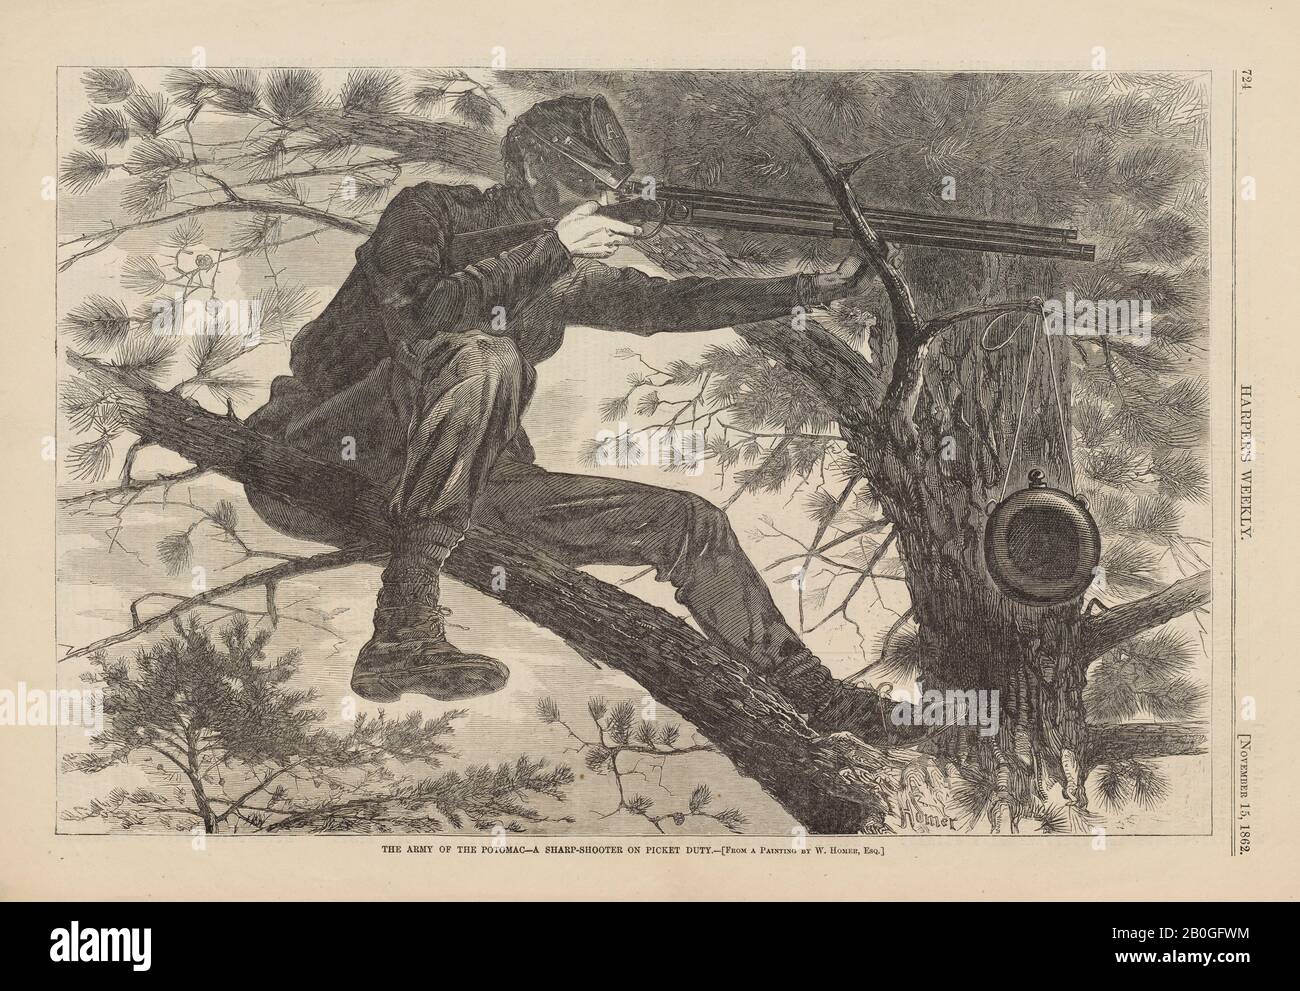 Après Winslow Homer, américain, 1836–1910, The Army of the Potomac—A Sharp-Shooter on Picket Duty, De Harper's Weekly, vol. 6, 15 nov. 1862, gravure en bois sur papier journal, image : 9 1/4 x 13 3/4 in. (23,5 x 35 cm Banque D'Images